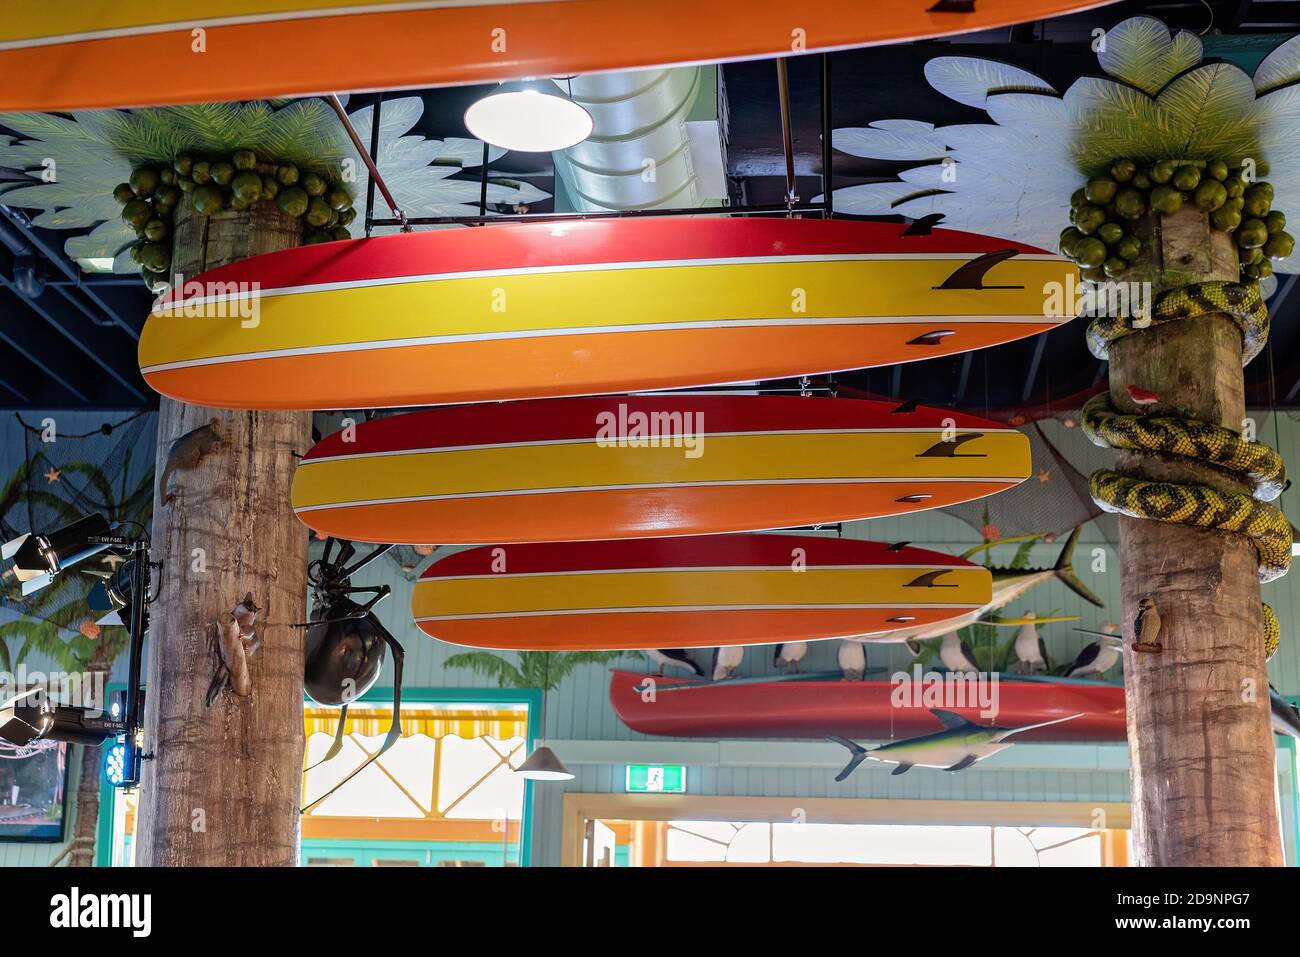 Palmview, Queensland, Australien - 20. September 2019: Im Inneren des farbenfrohen Hotels, bekannt als The Pub at Aussie World Stockfoto